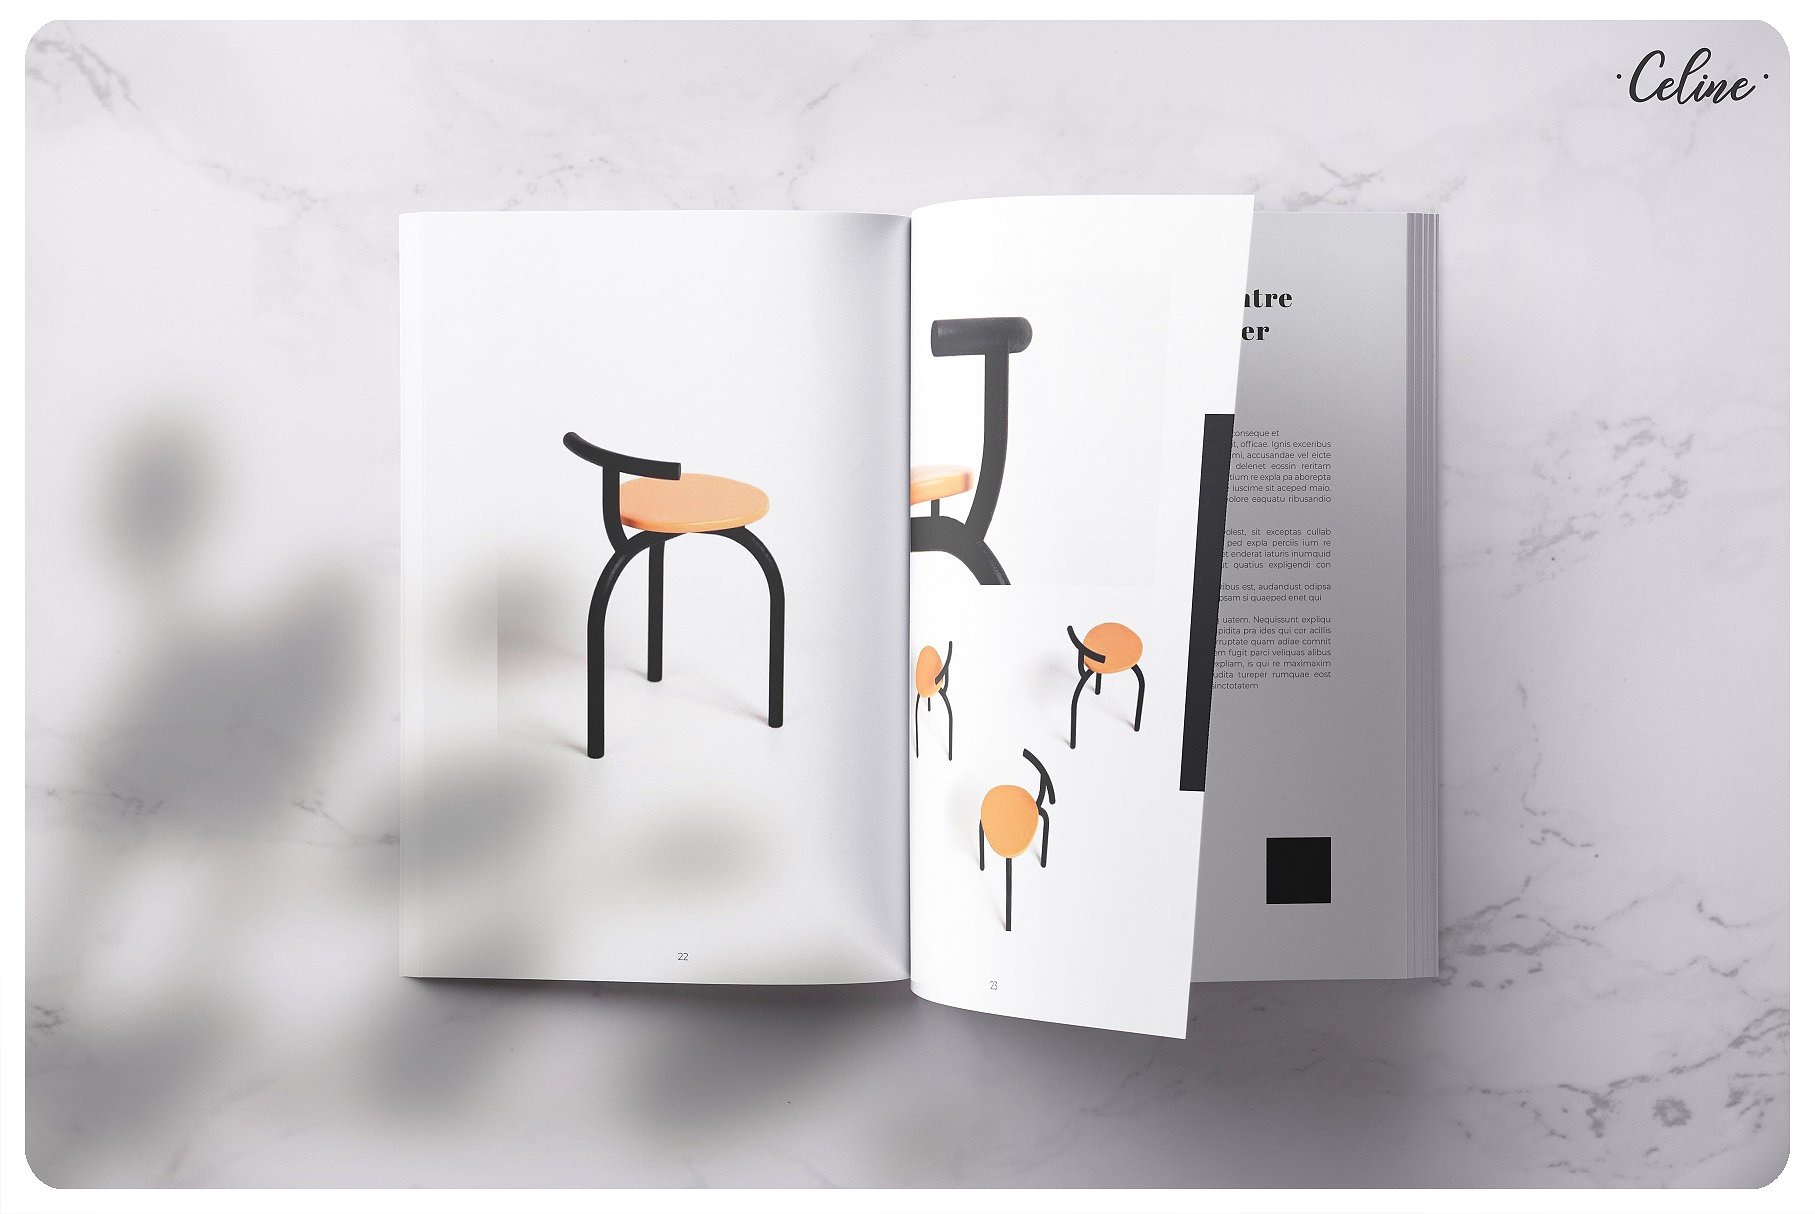 时尚家具设计产品促销A4画册杂志Indesign模板 Fashion Furniture Design Product Promotion A4 Album Magazine Indesign Template插图6